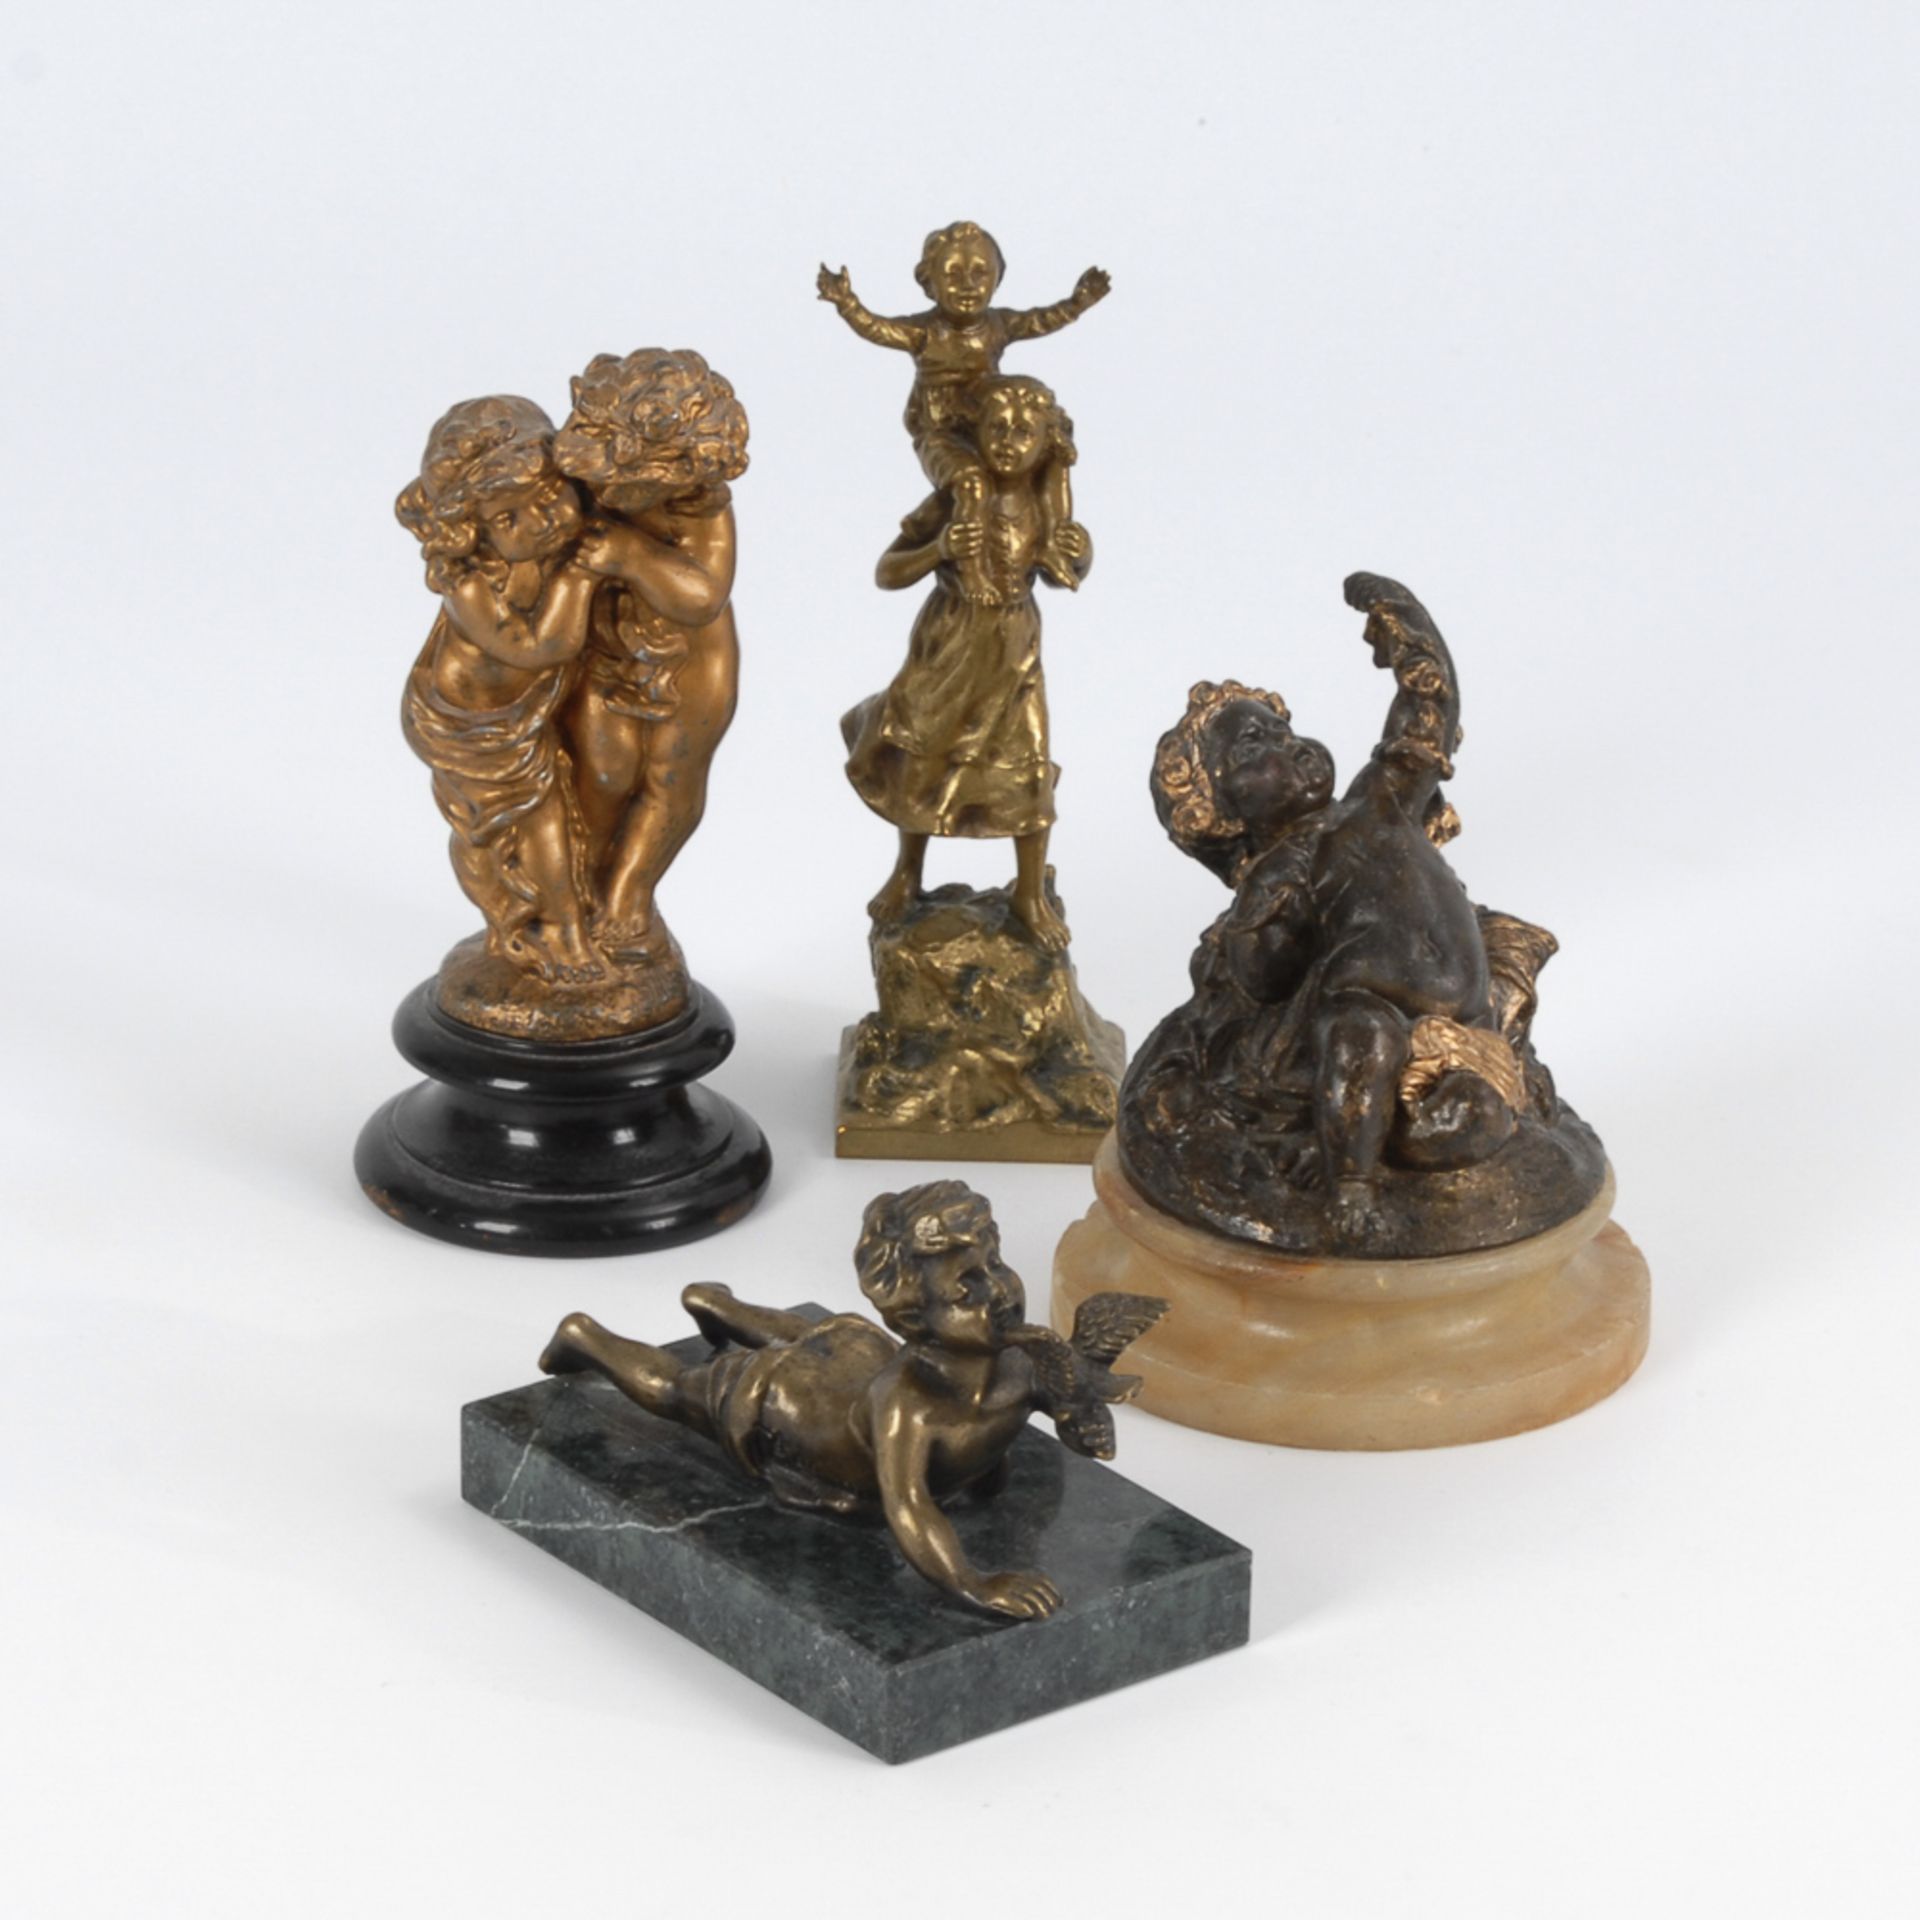 4 Kleinplastiken.2x Bronze mit Resten einer Patina, das Kleinkind "Aug. Moreau" bezeichnet,